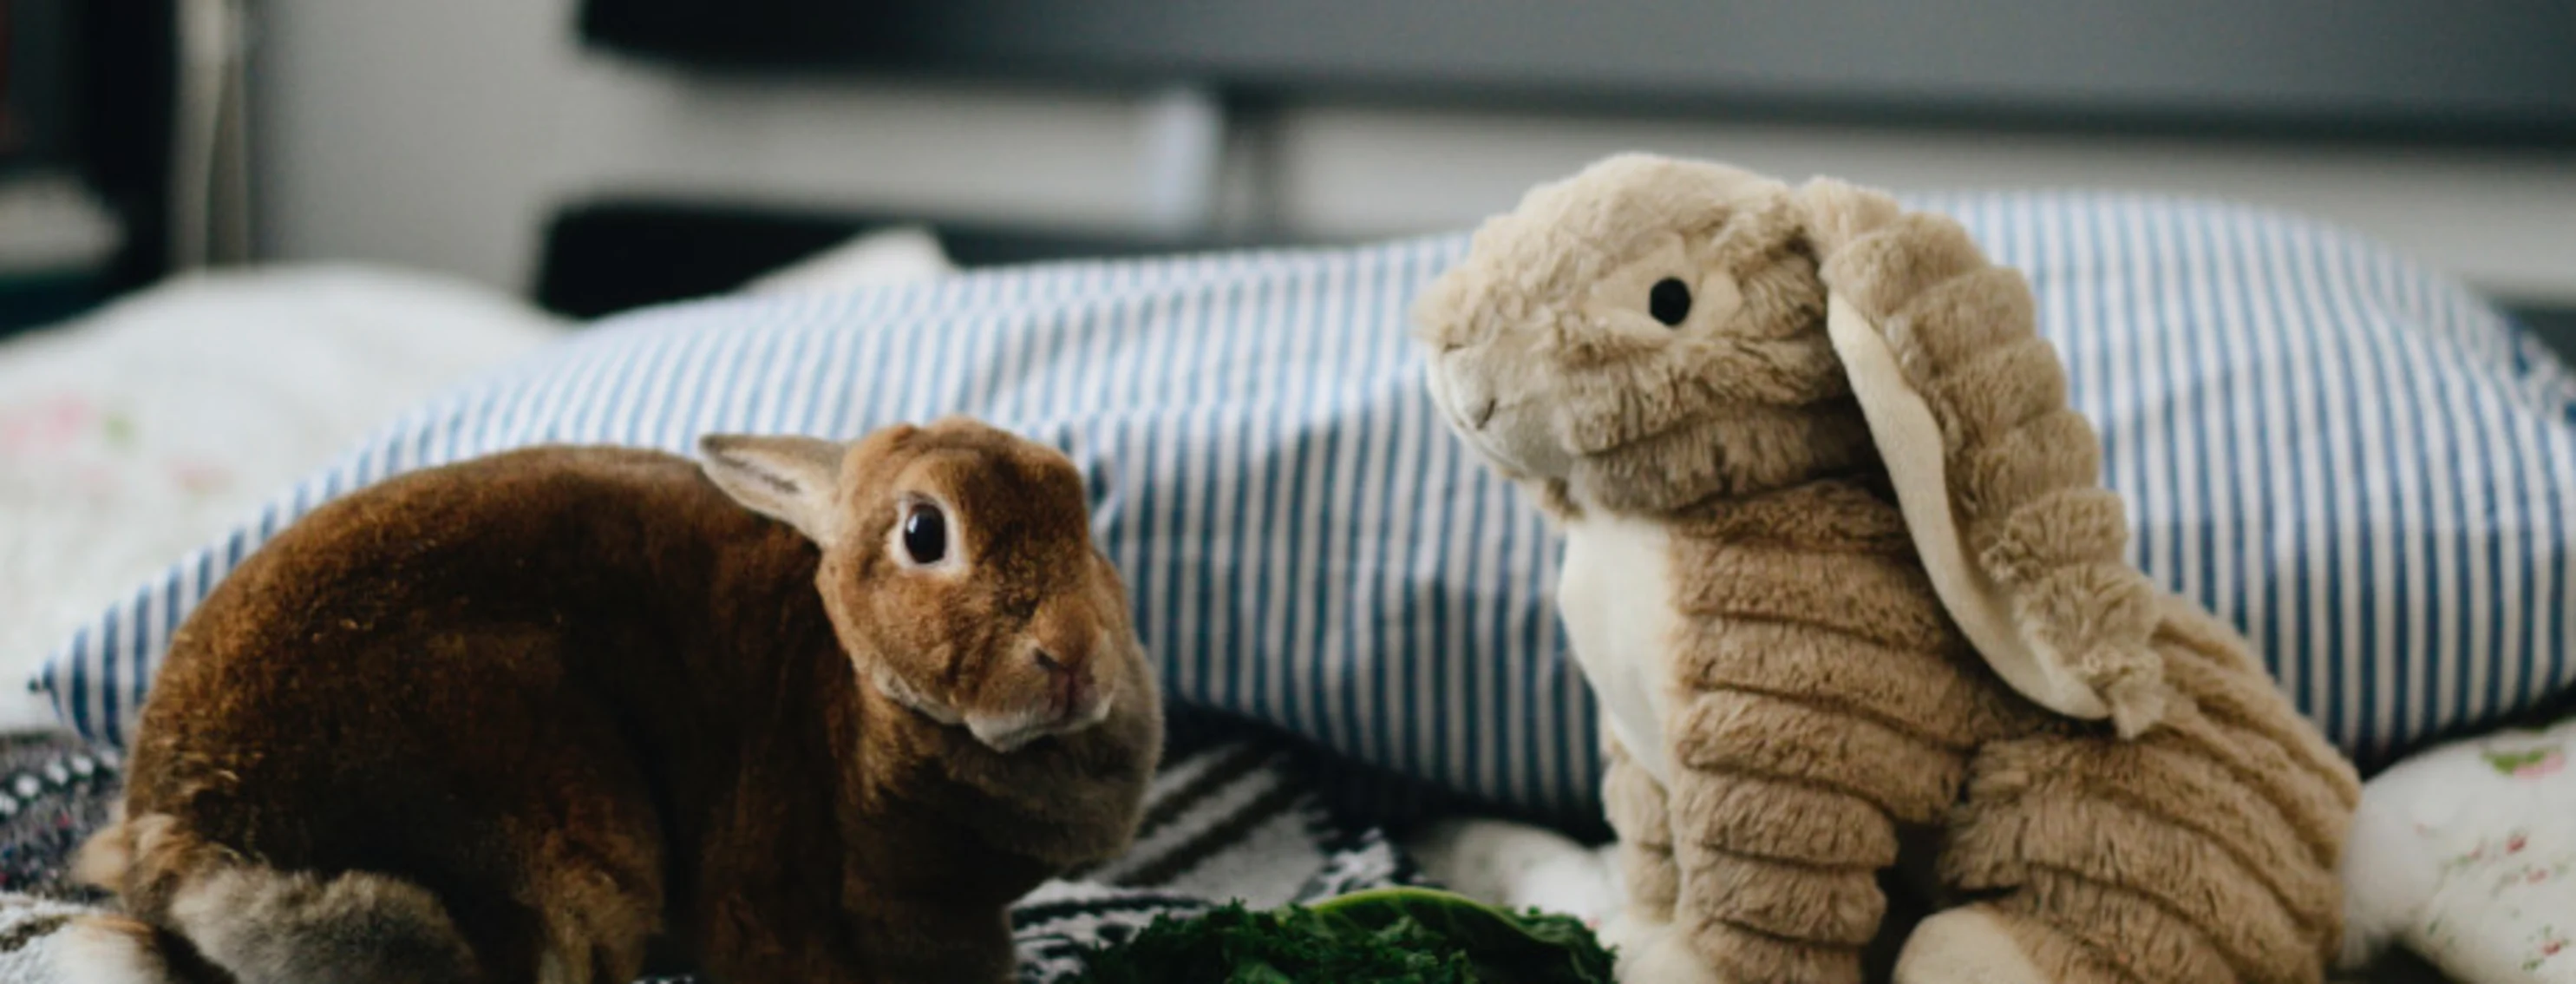 A Brown Rabbit next to a Stuffed Rabbit